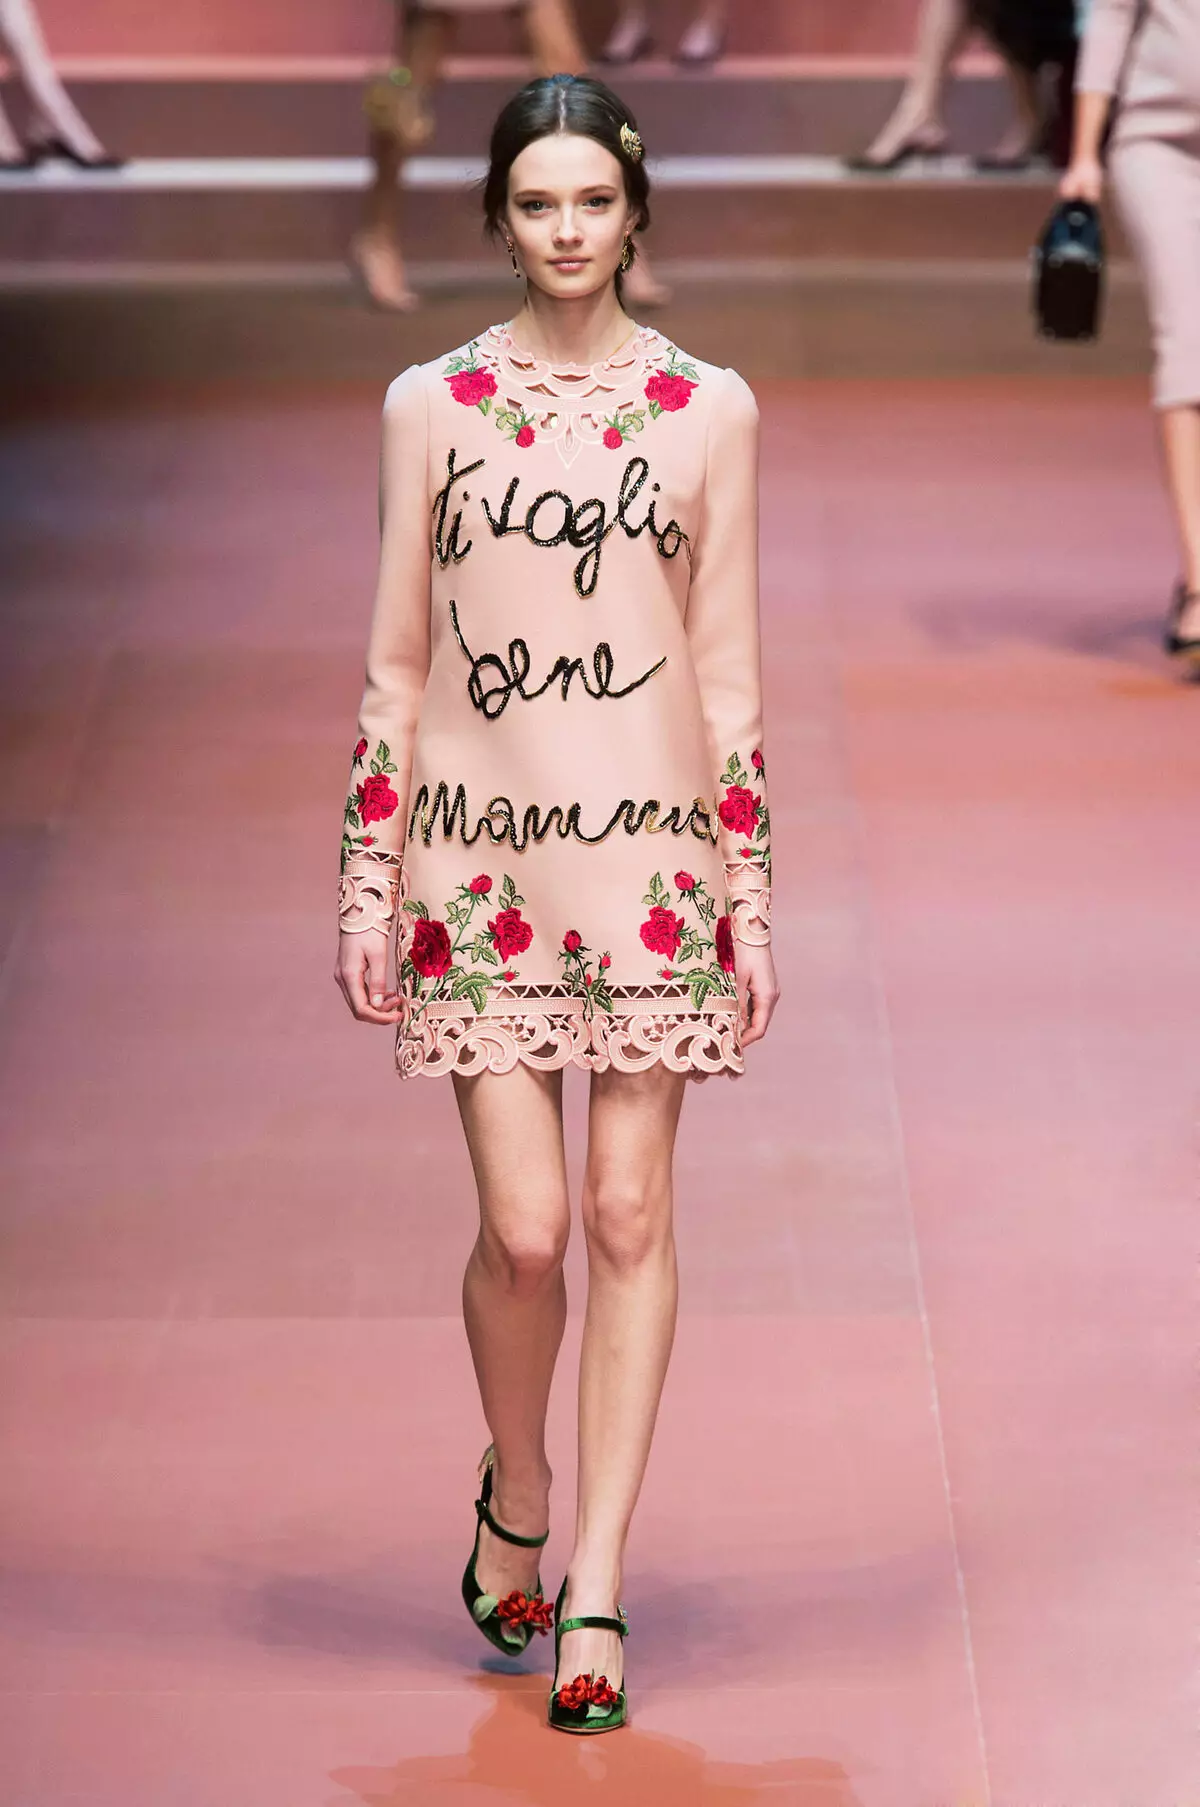 Różowa sukienka z różami na pokazie mody Dolce & Gabbana